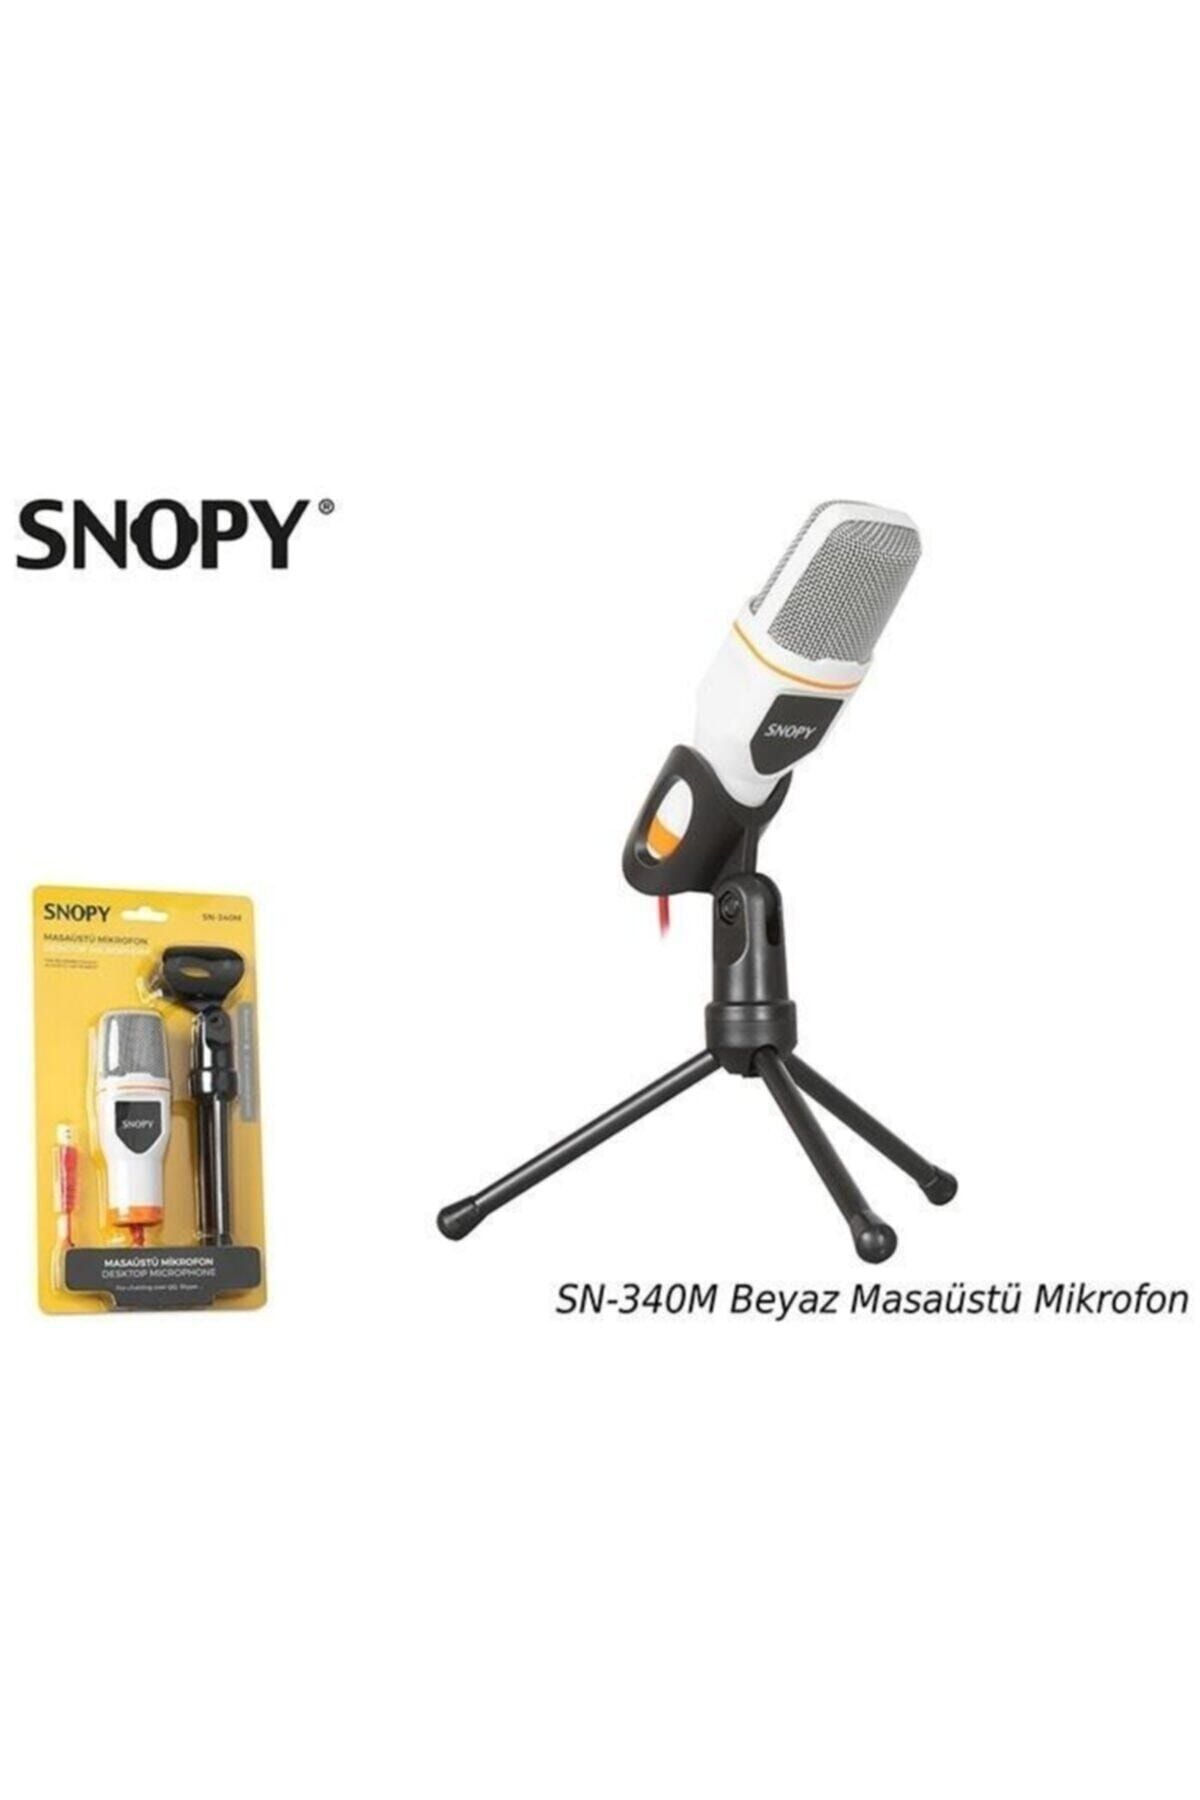 Snopy Sn-340m Beyaz Masaüstü Mikrofon